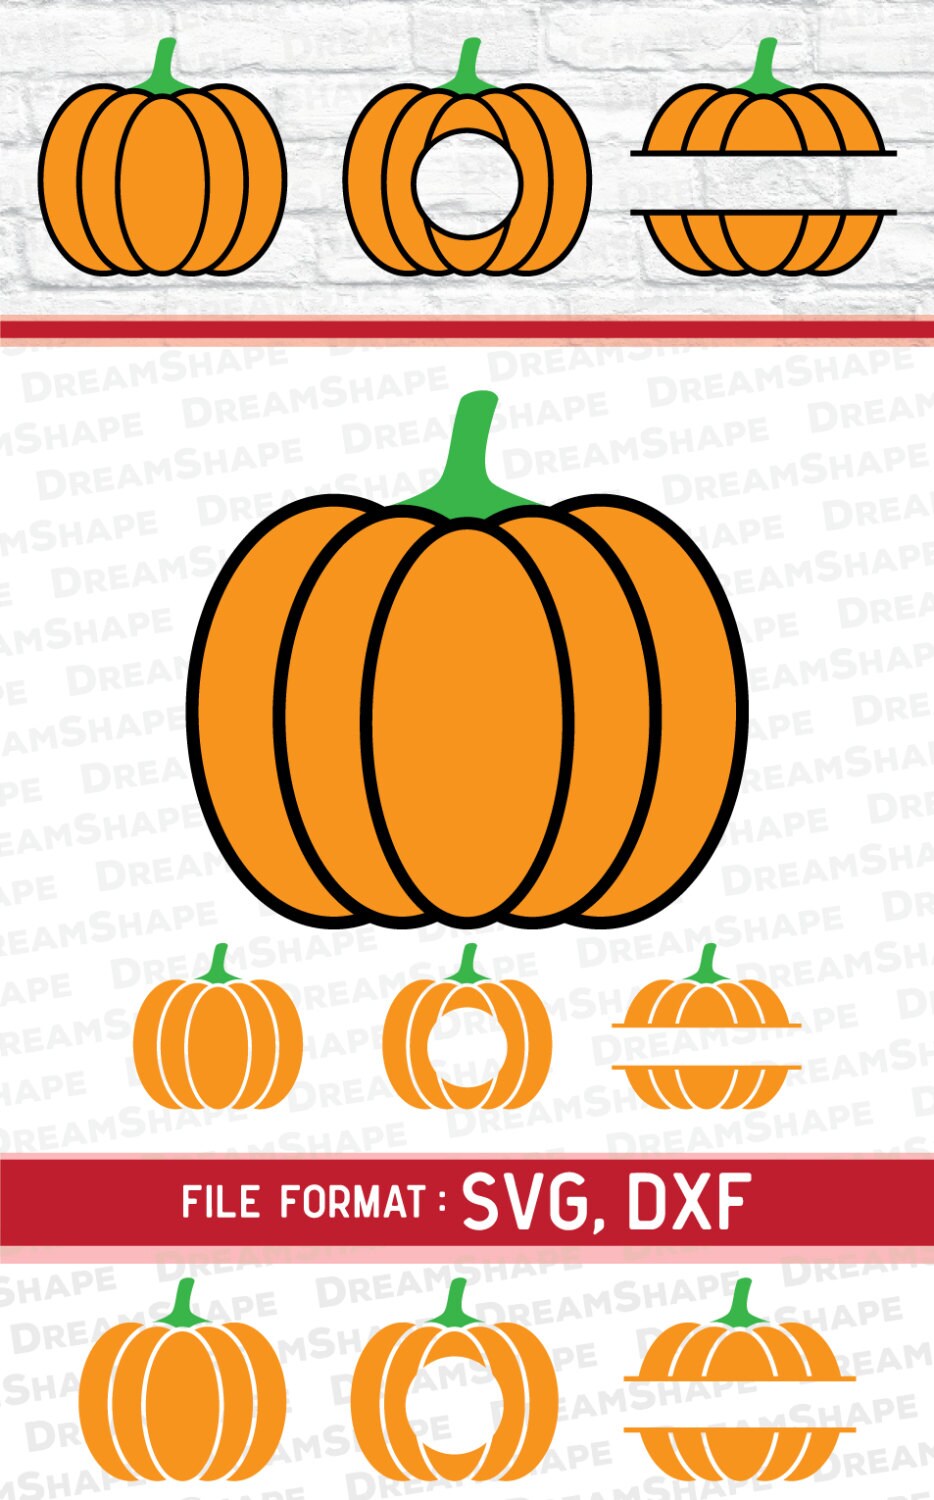 Download Pumpkin SVG Files Pumpkin SVG Pumpkin Monogram SVG Pumpkin